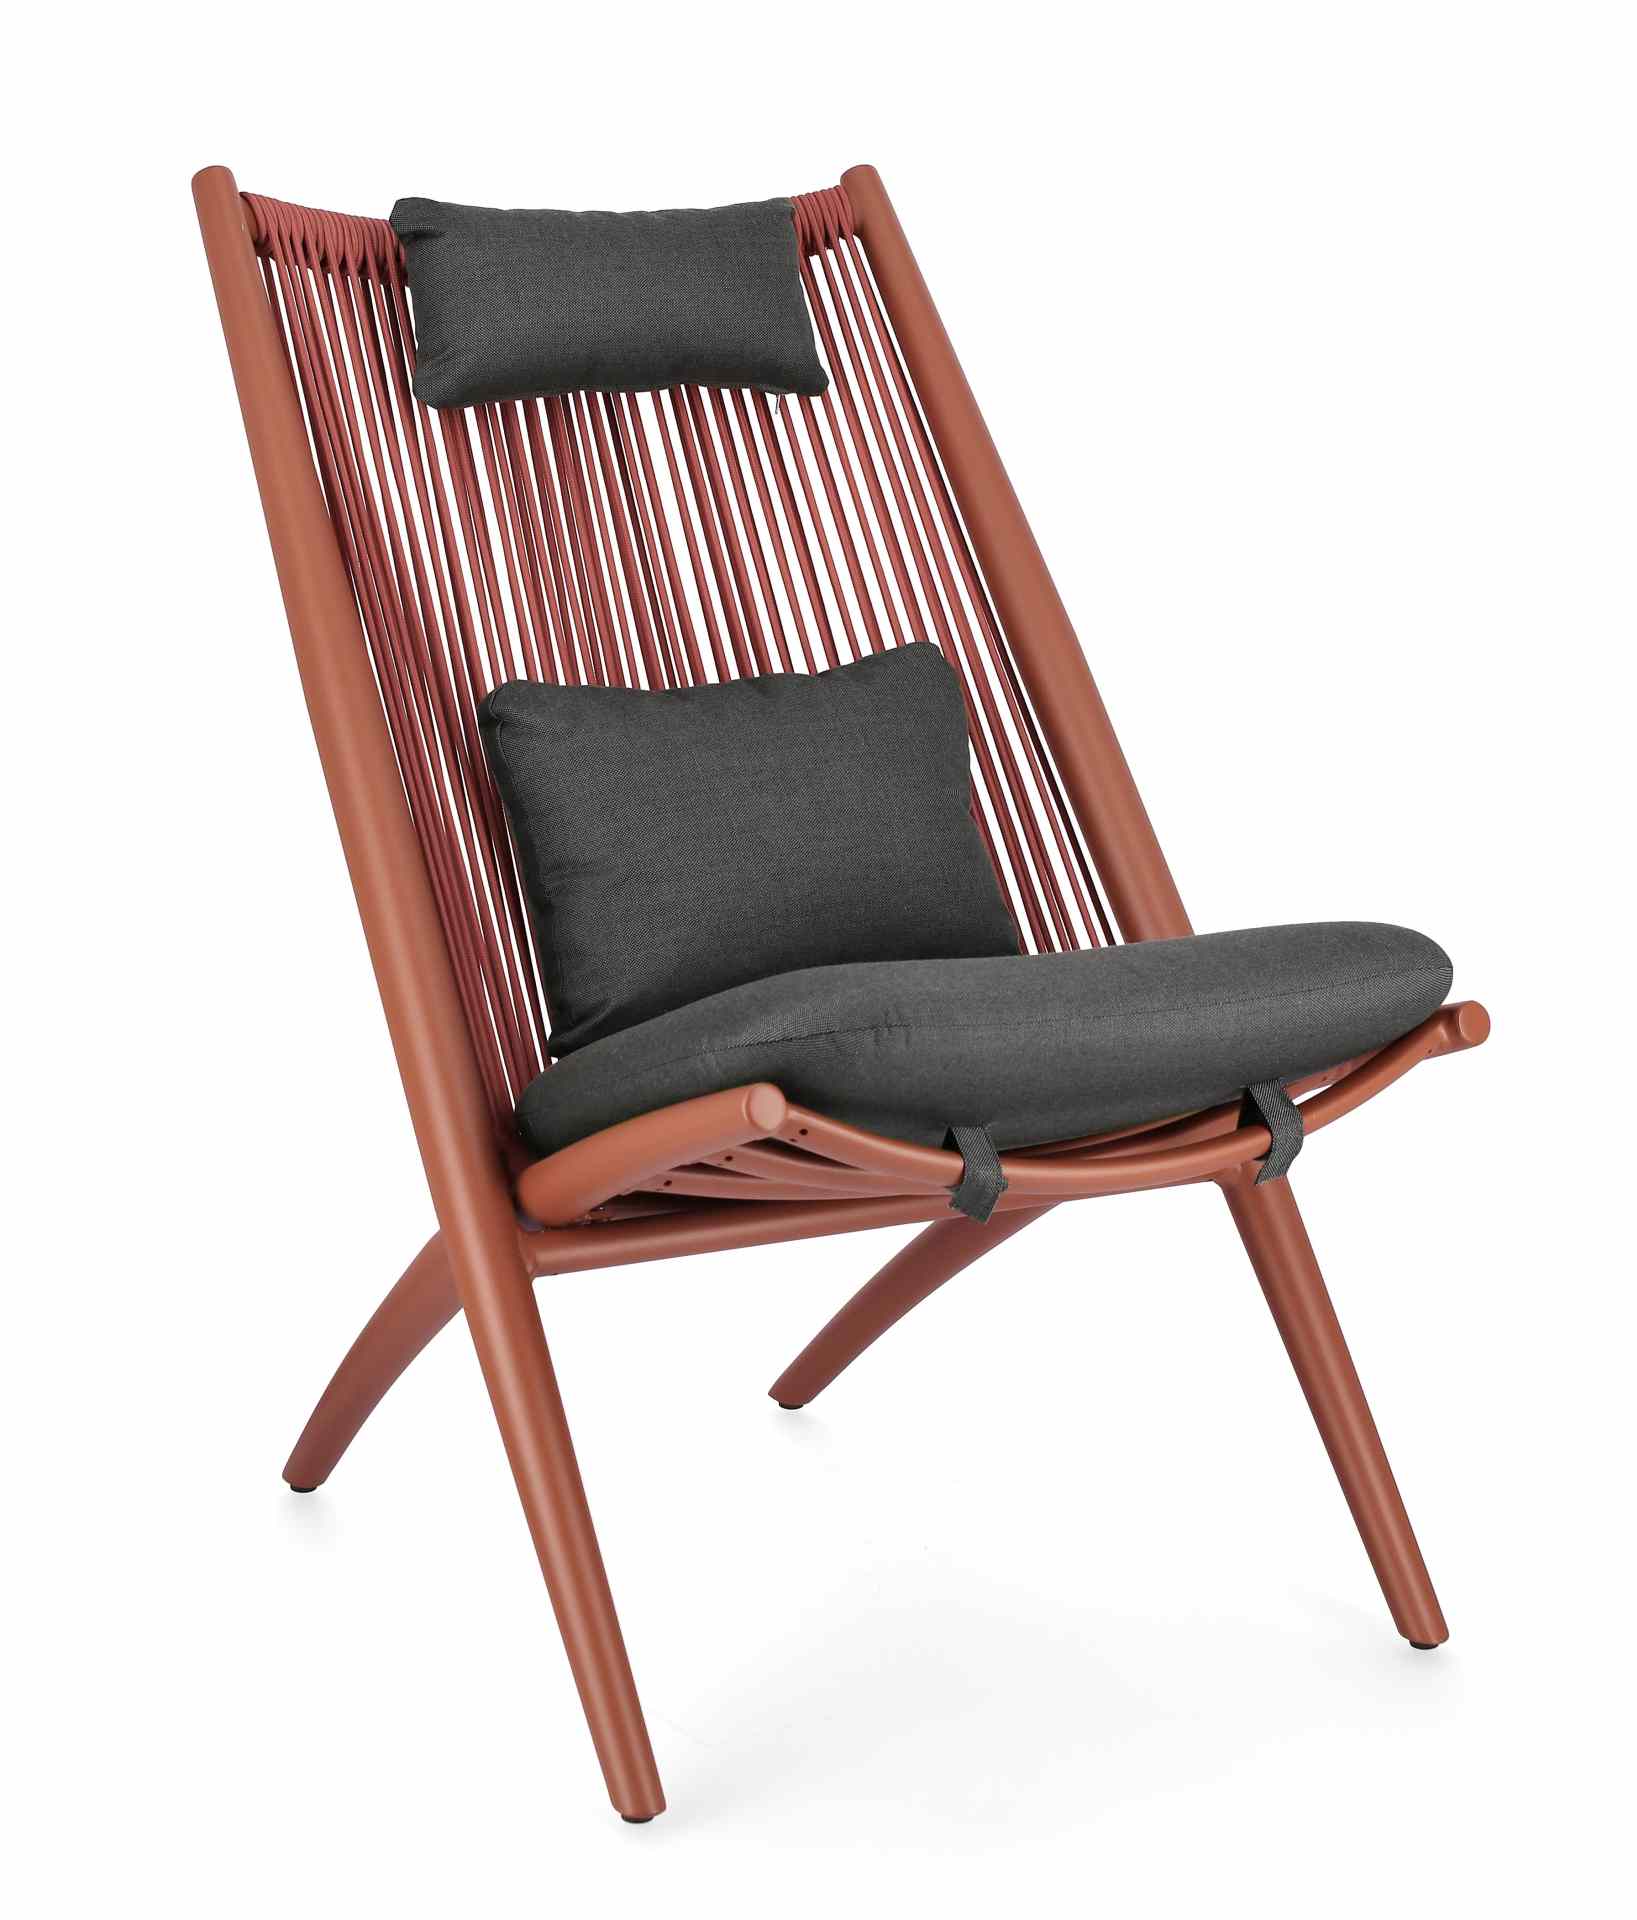 Der Gartensessel Aloha überzeugt mit seinem modernen Design. Gefertigt wurde er aus Kunstfaser-Stoff, welcher einen grauen Farbton besitzt. Das Gestell ist aus Aluminium und hat eine rote Farbe. Der Sessel verfügt über eine Sitzhöhe von 46 cm und ist für 